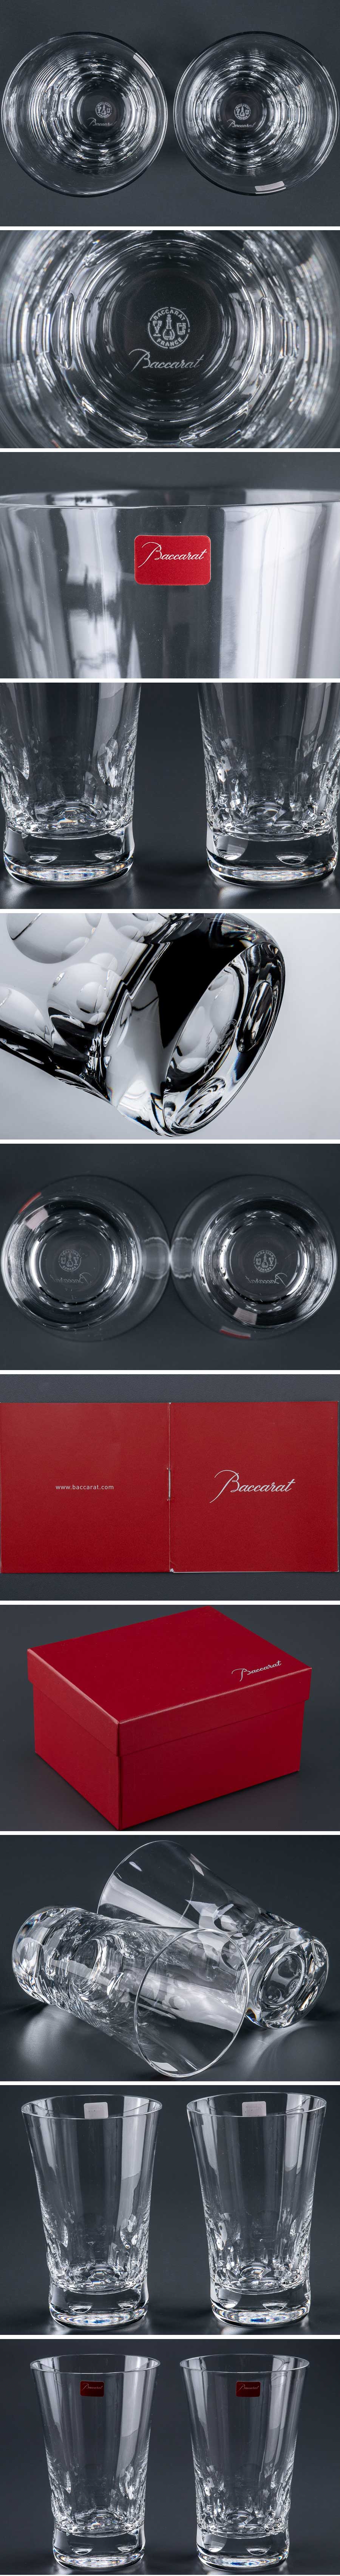 最新品通販『 バカラ baccarat 「 ベルーガ 」 タンブラー グラス 2客 箱付 9929 』 2個組 洋食器 ブランド テーブルウェア クリスタルガラス 工芸ガラス